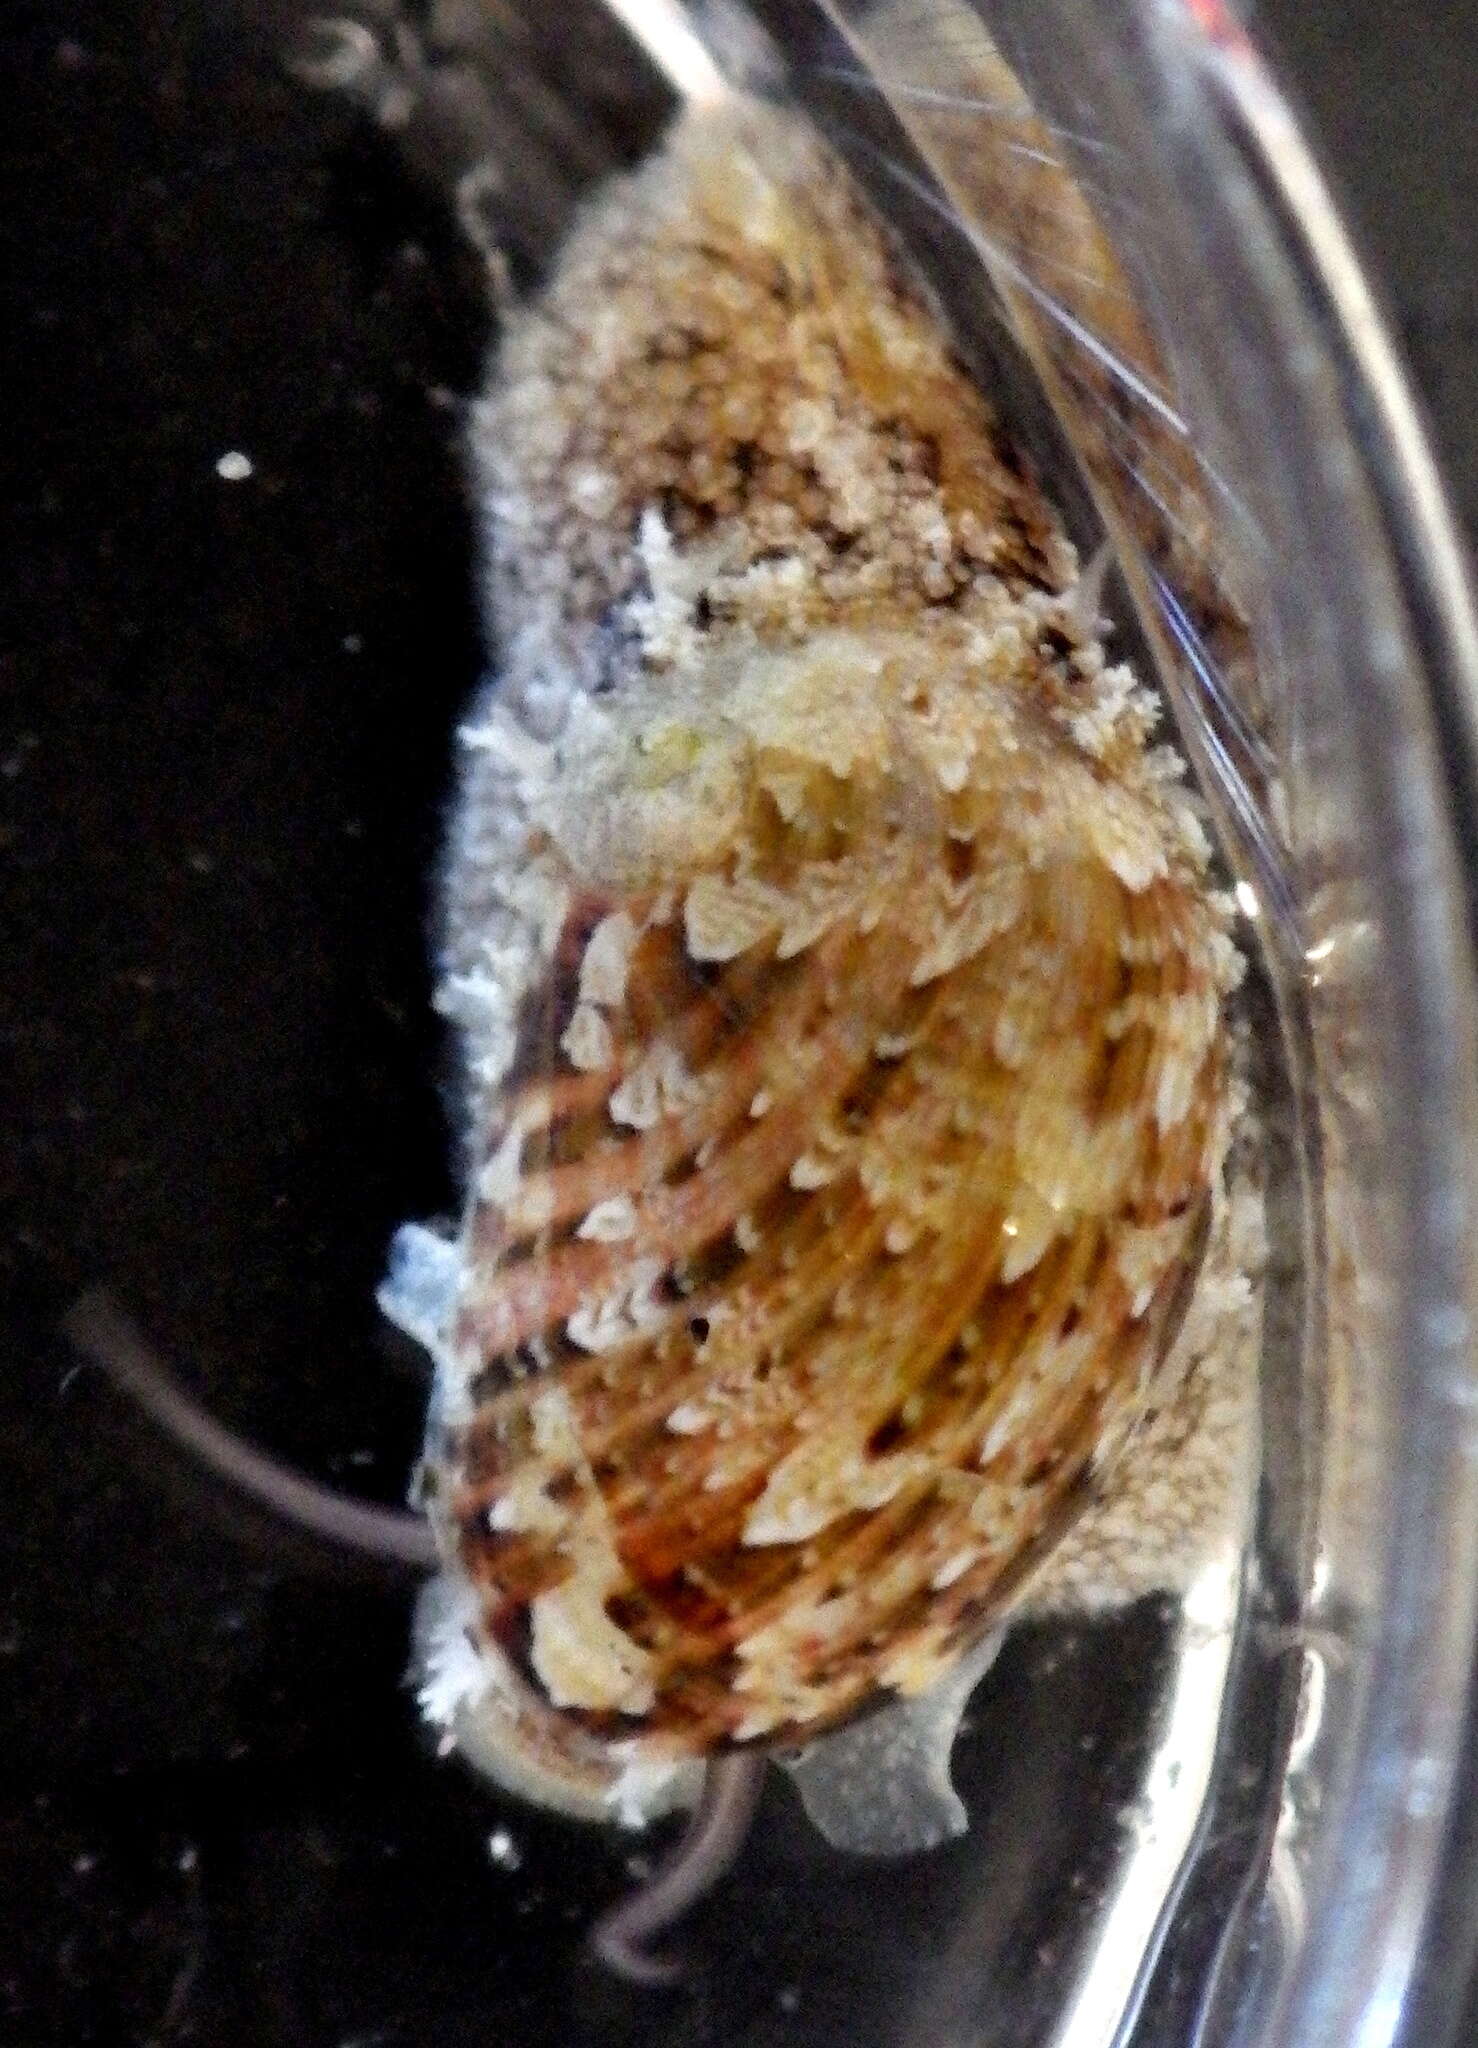 Image of Stomatella impertusa (Burrow 1815)